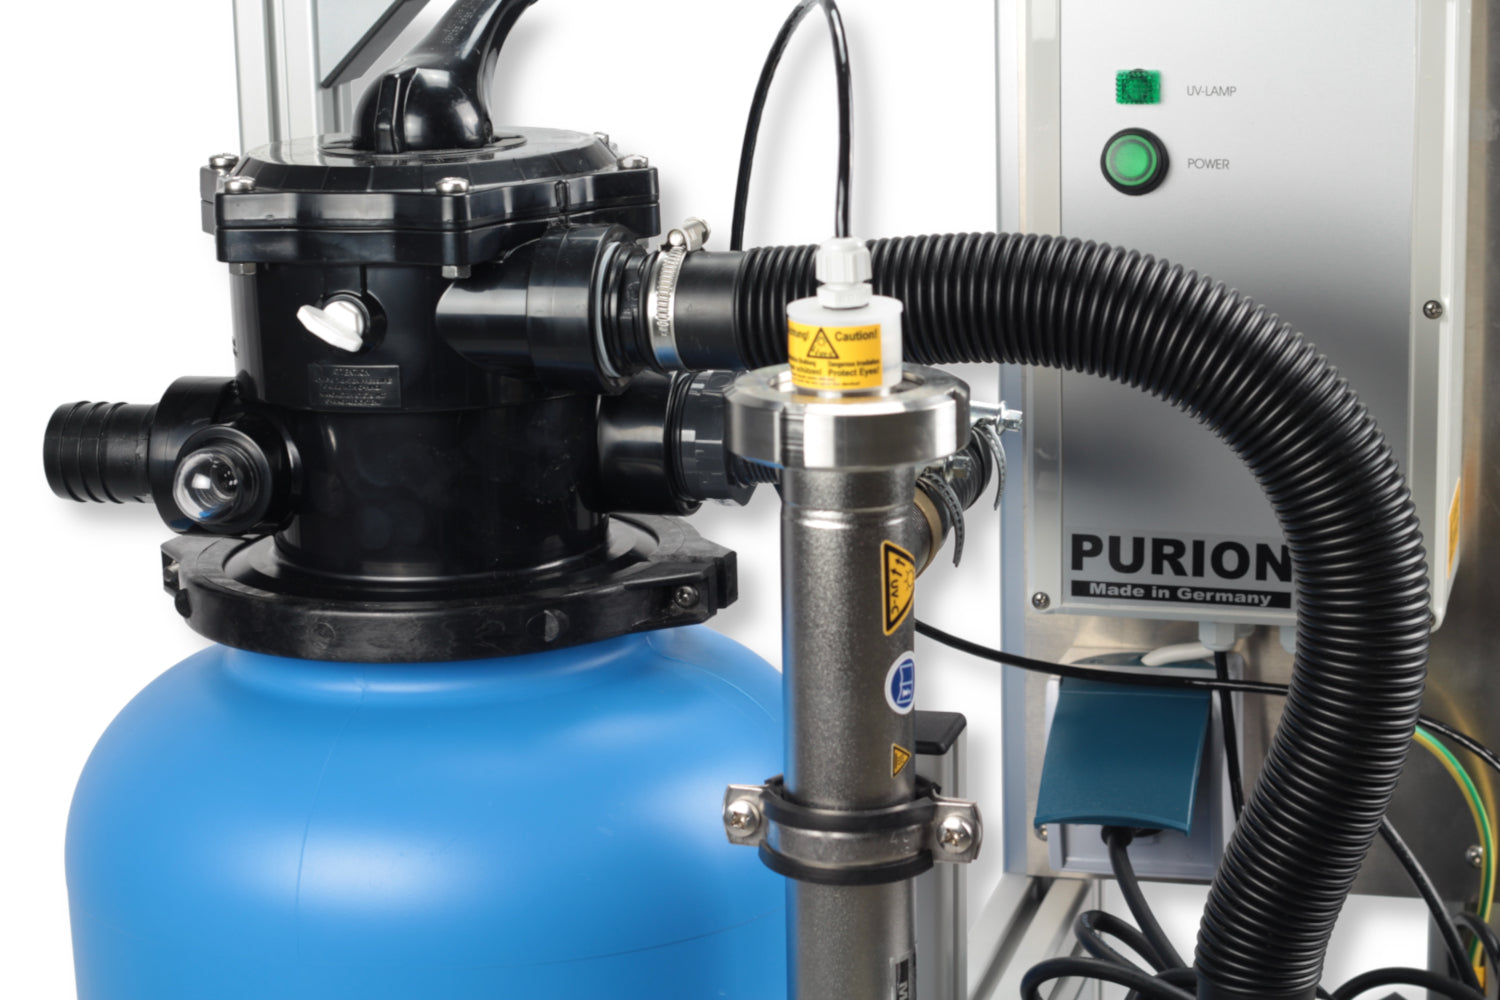 Hochwertige und langlebige PURION Pool 20 Edelstahl Basic Filteranlage mit dem innovativen Puron Wasserfiltersystem.